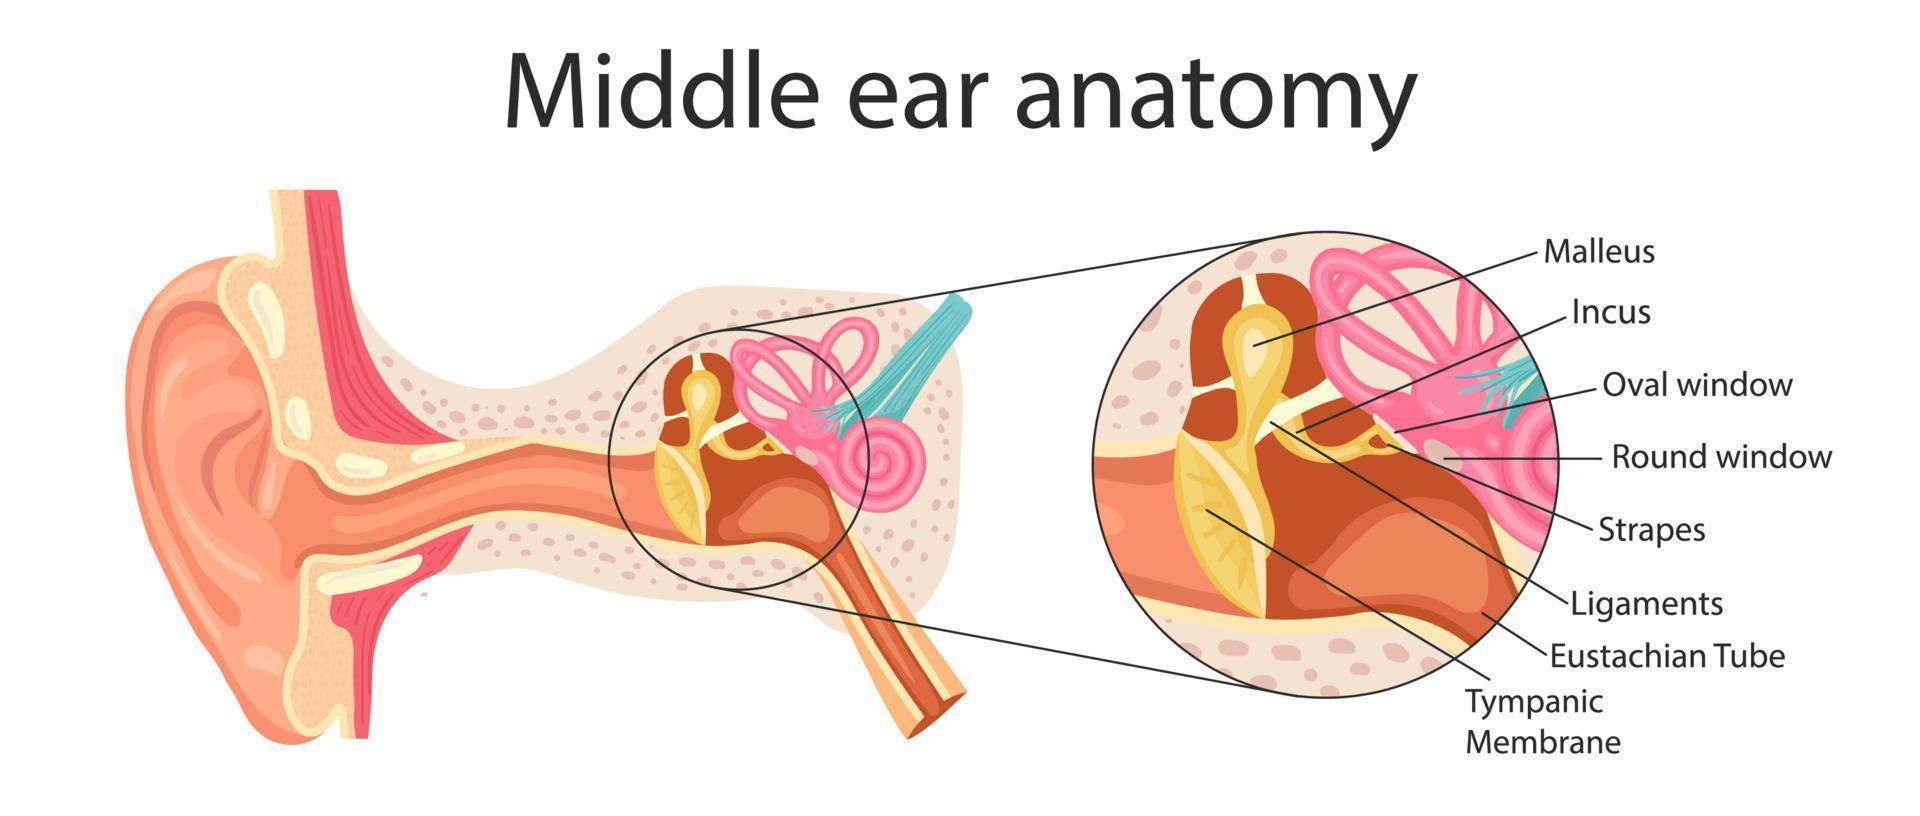 anatomia do ouvido médio. ilustração detalhada para fins educacionais, médicos, biológicos e científicos. vetor